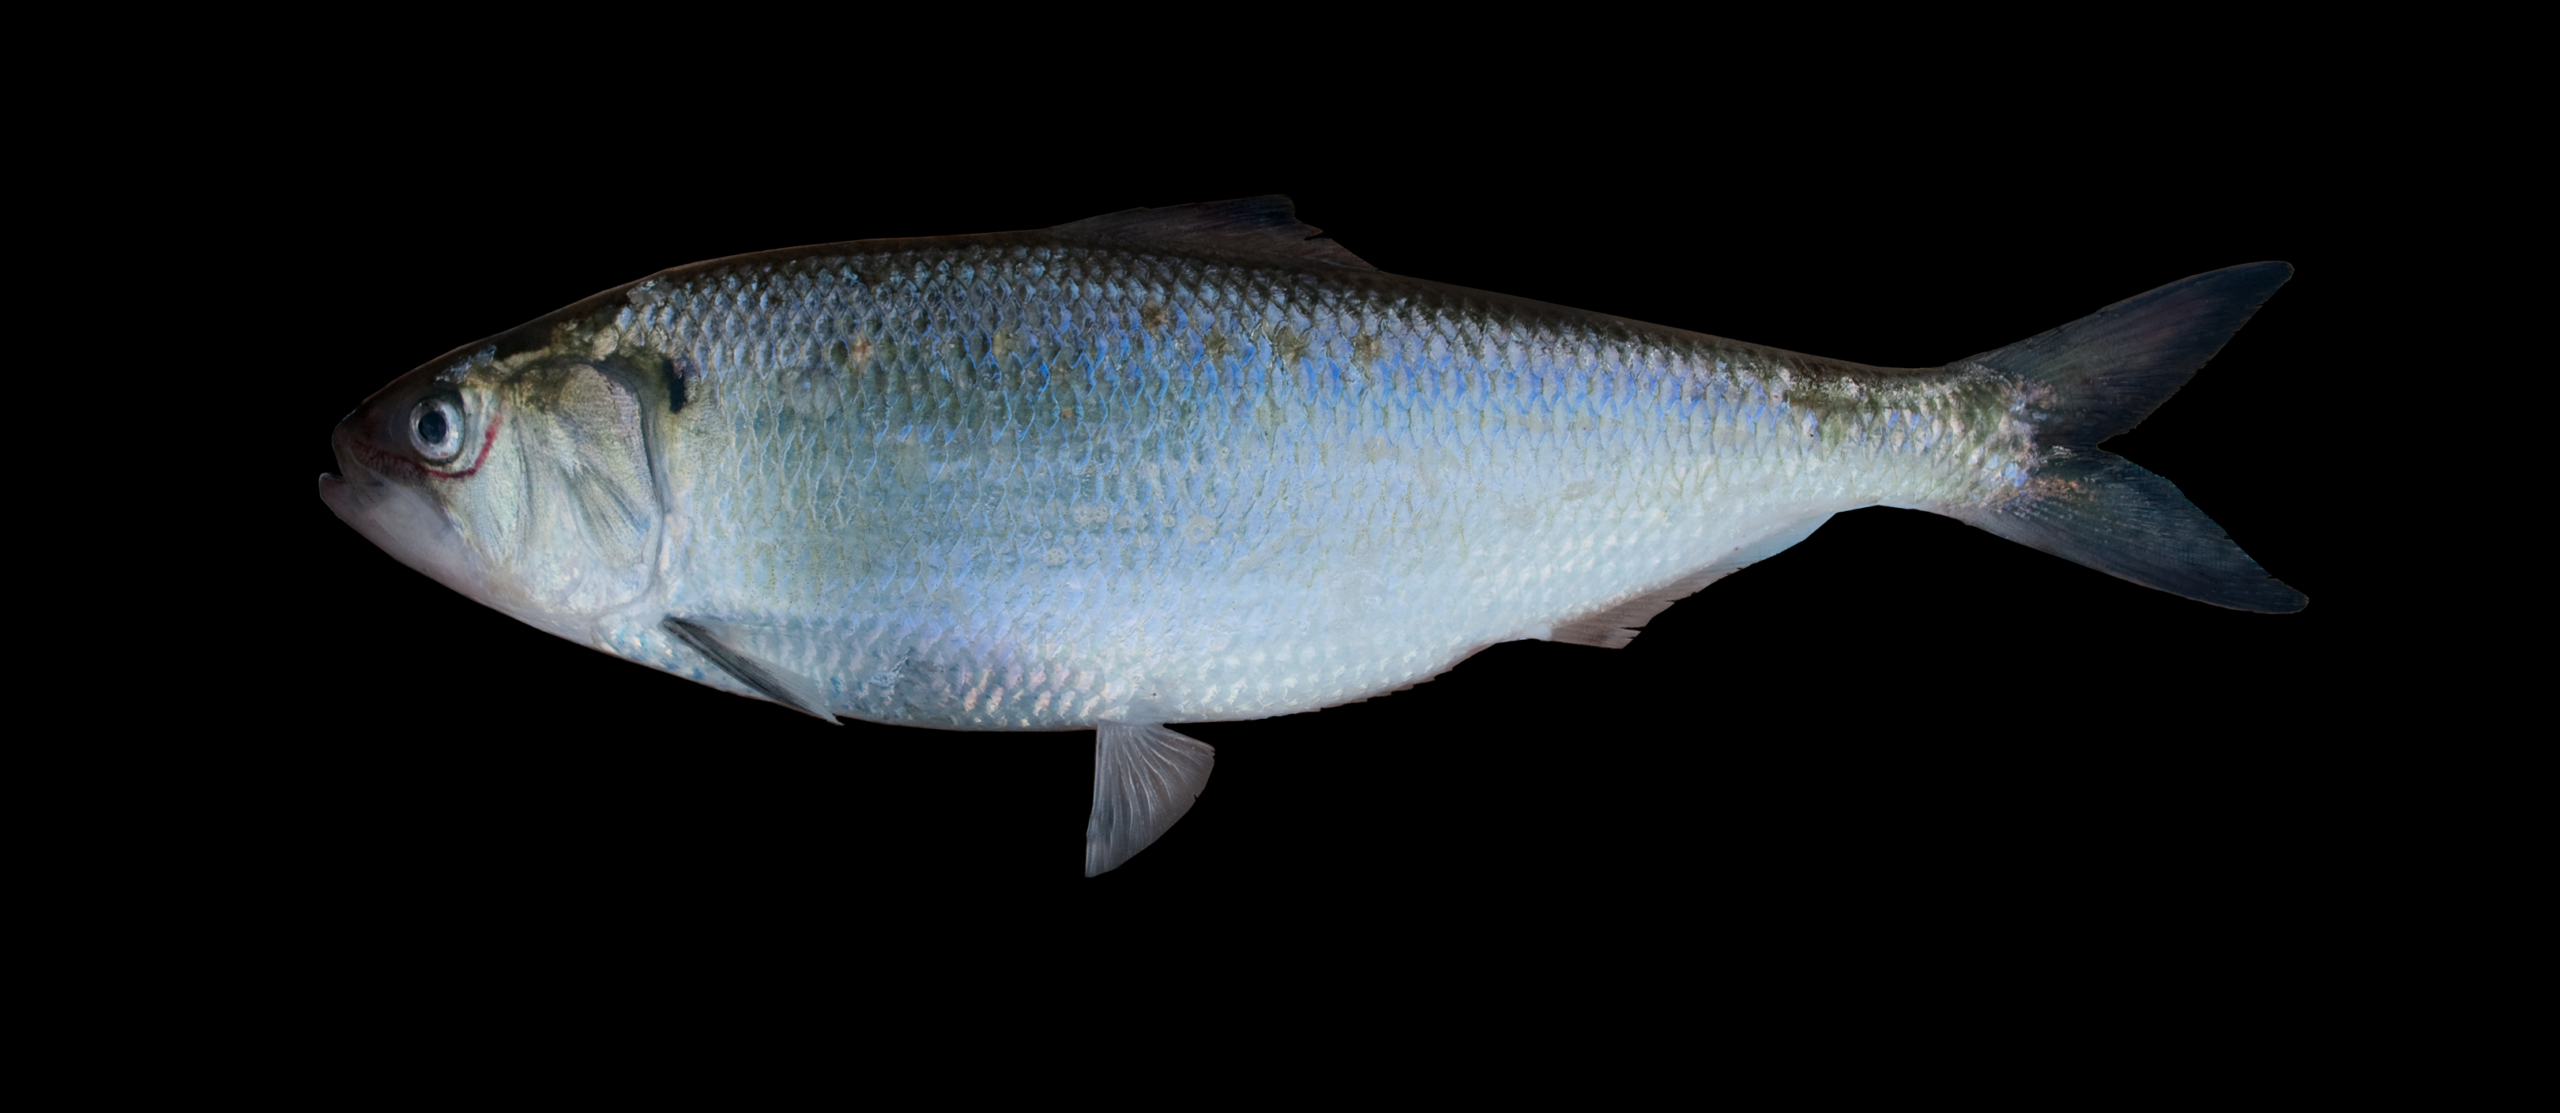 10 самых необычные рыб в мире (фото, видео)